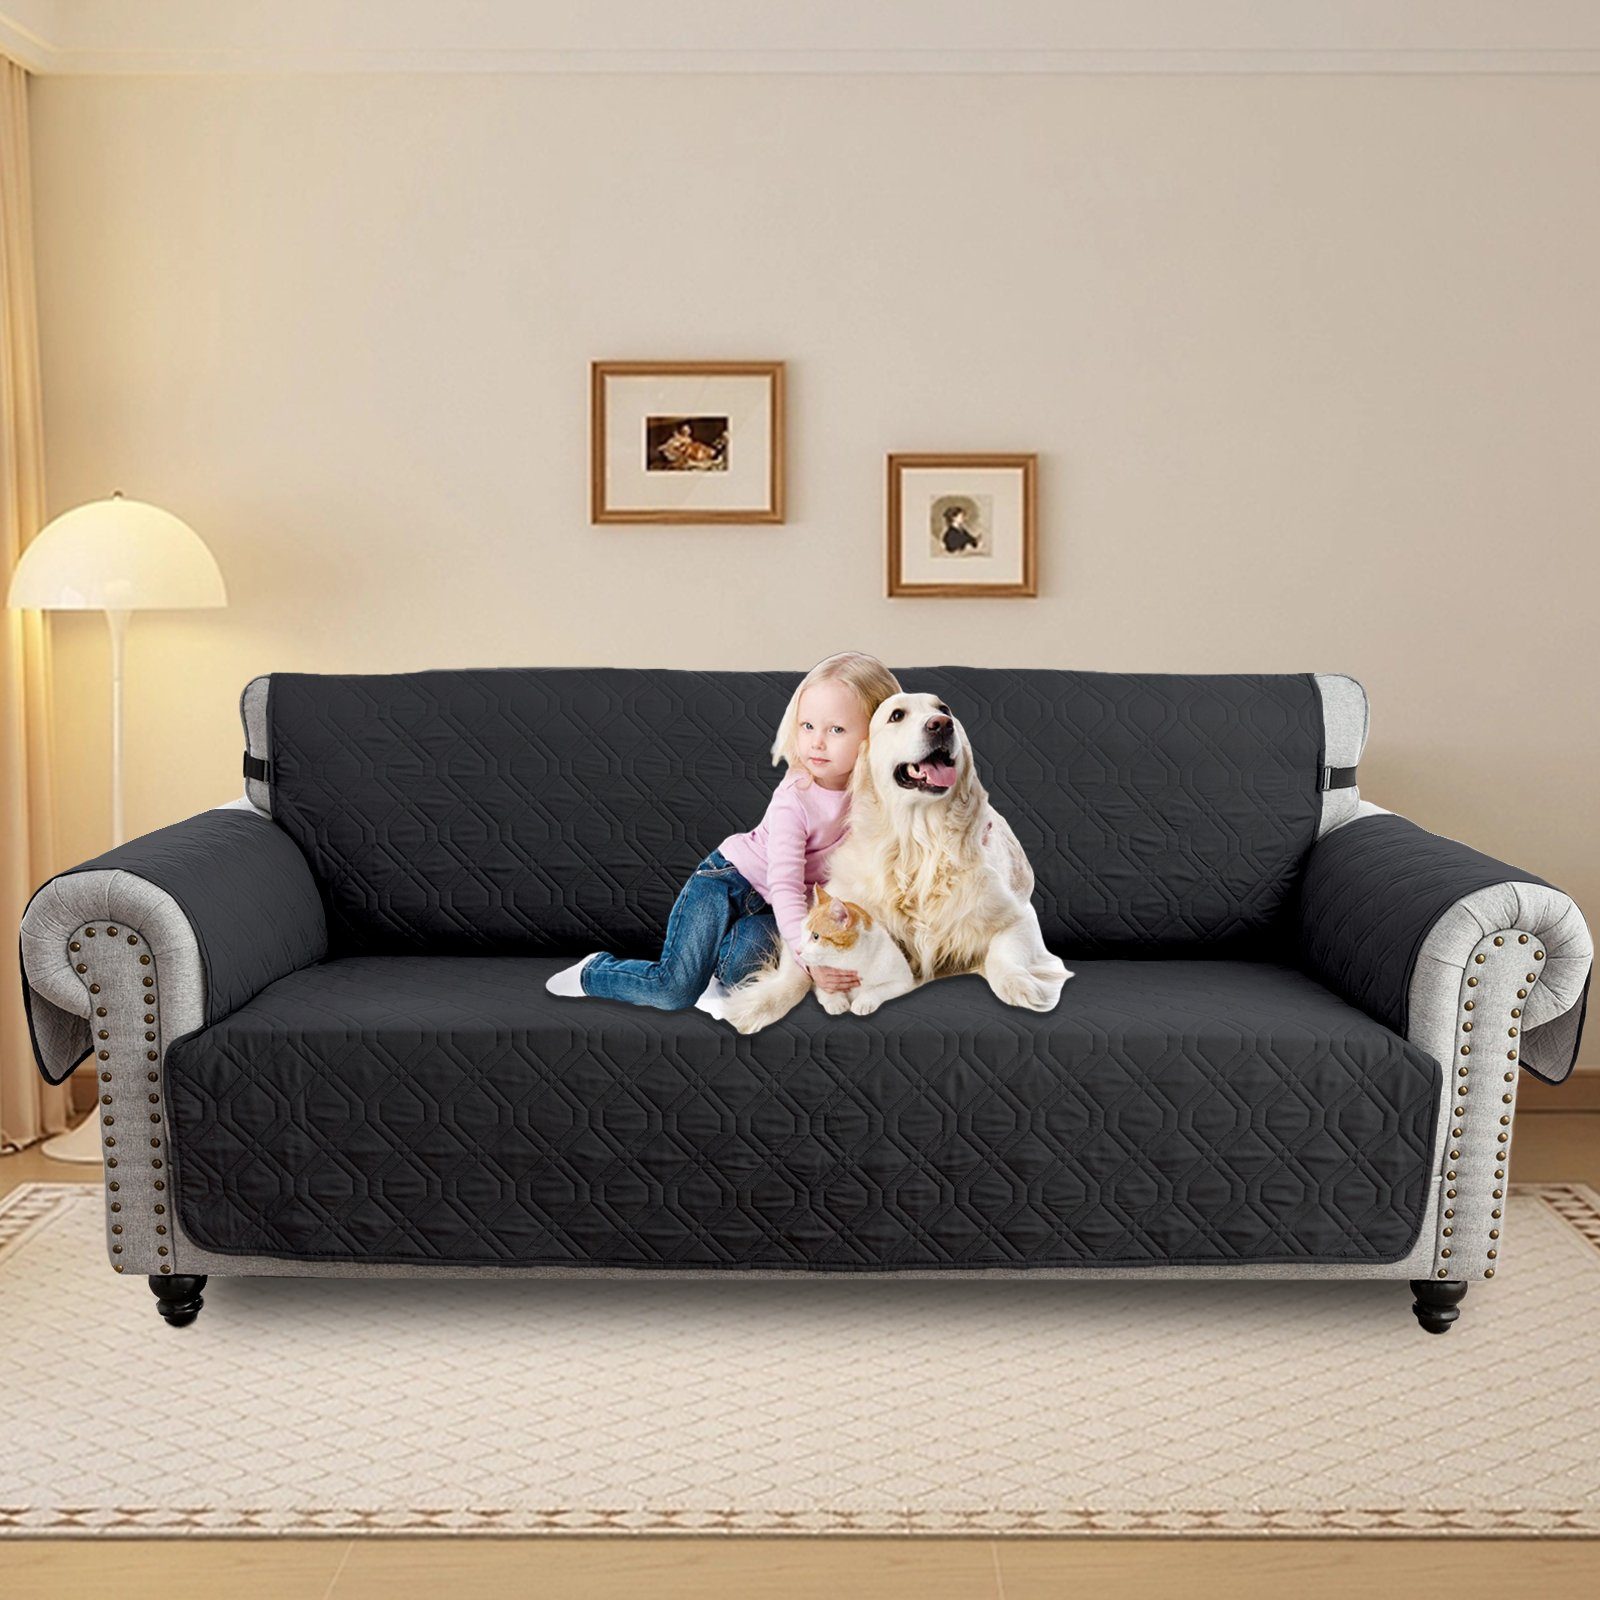 Sofabezug Wasserdicht Gesteppter Haustier Hunde Sofa Sunicol, Sesselbezug Überwurf Schwarz 1-3Sitz, Armlehnenauflage Sesselschoner Couch Schutz Anti-Rutsch